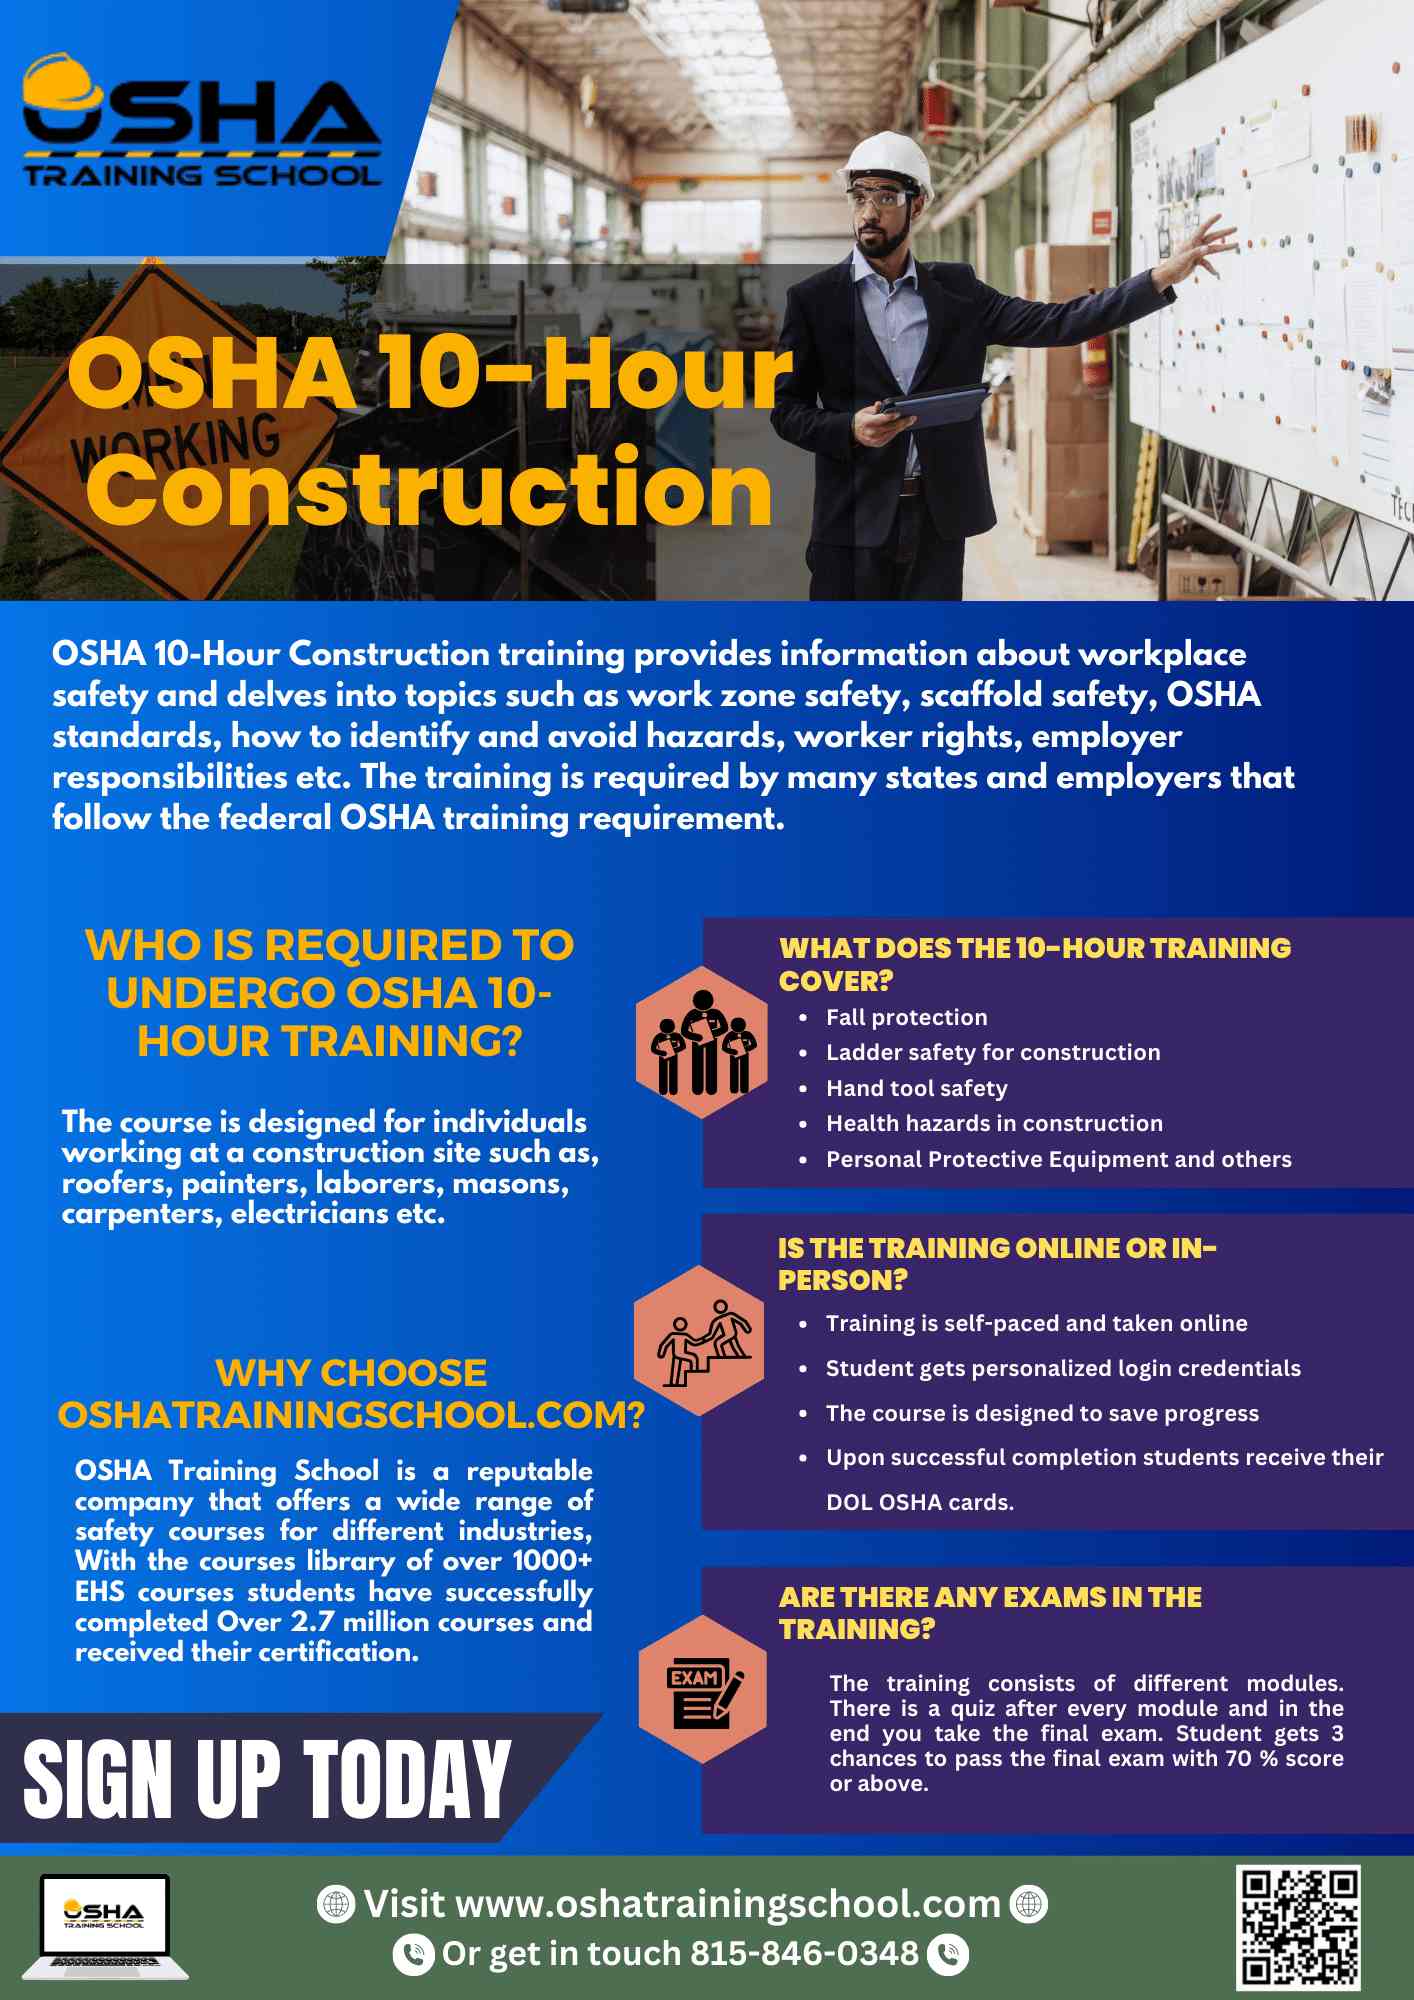 Osha-10-info